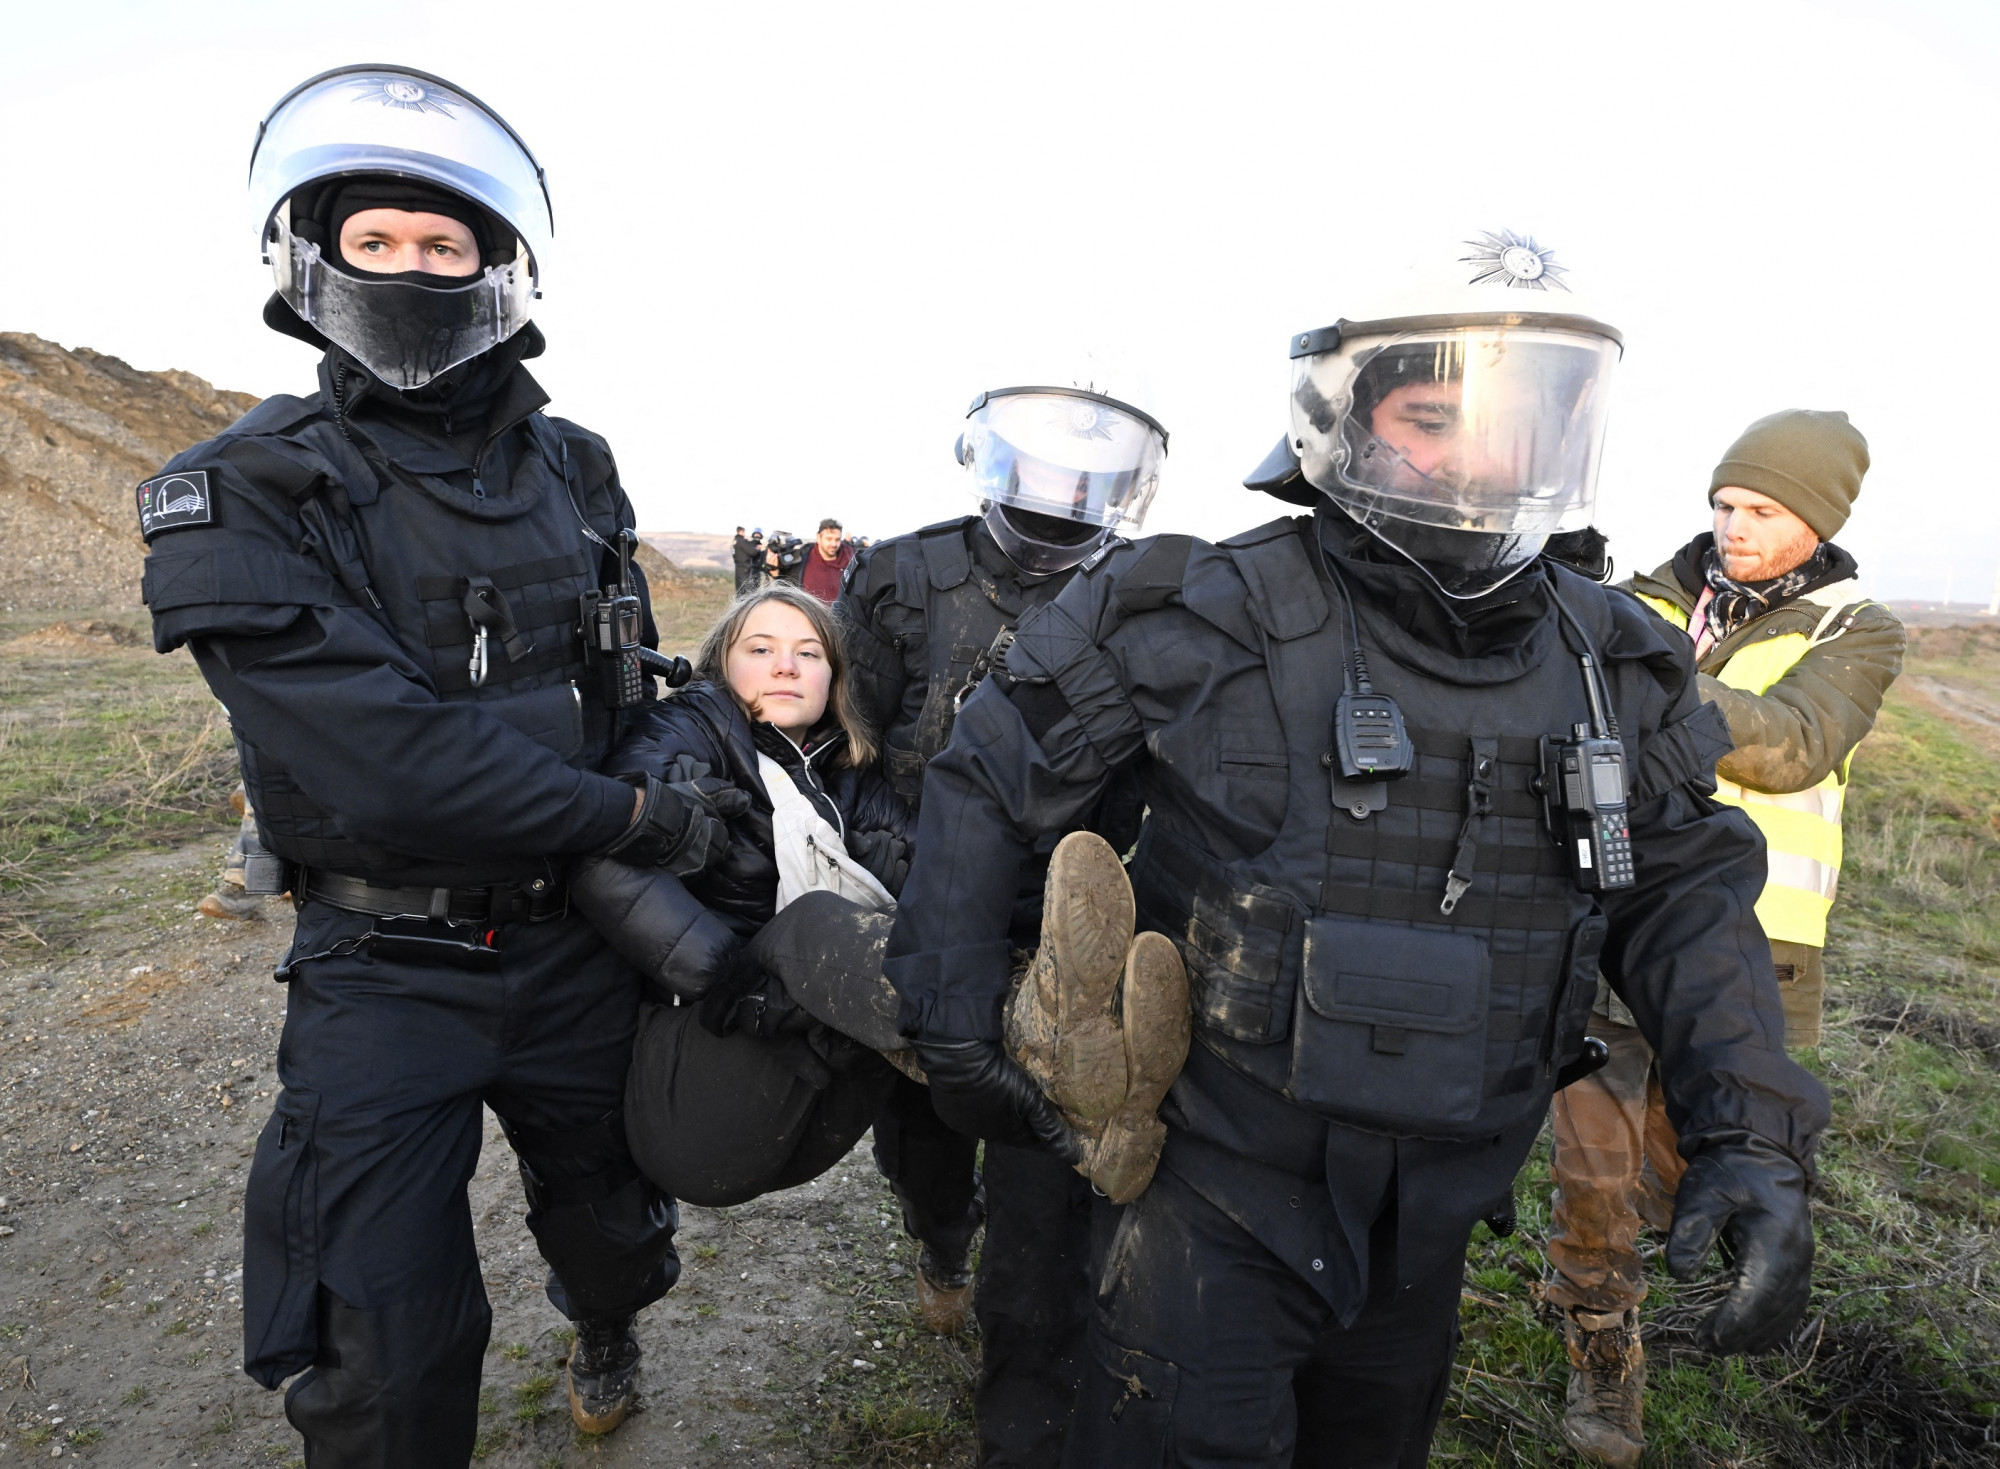 Greta Thunberget is őrizetbe vették egy szénbánya elleni tüntetésen Németországban